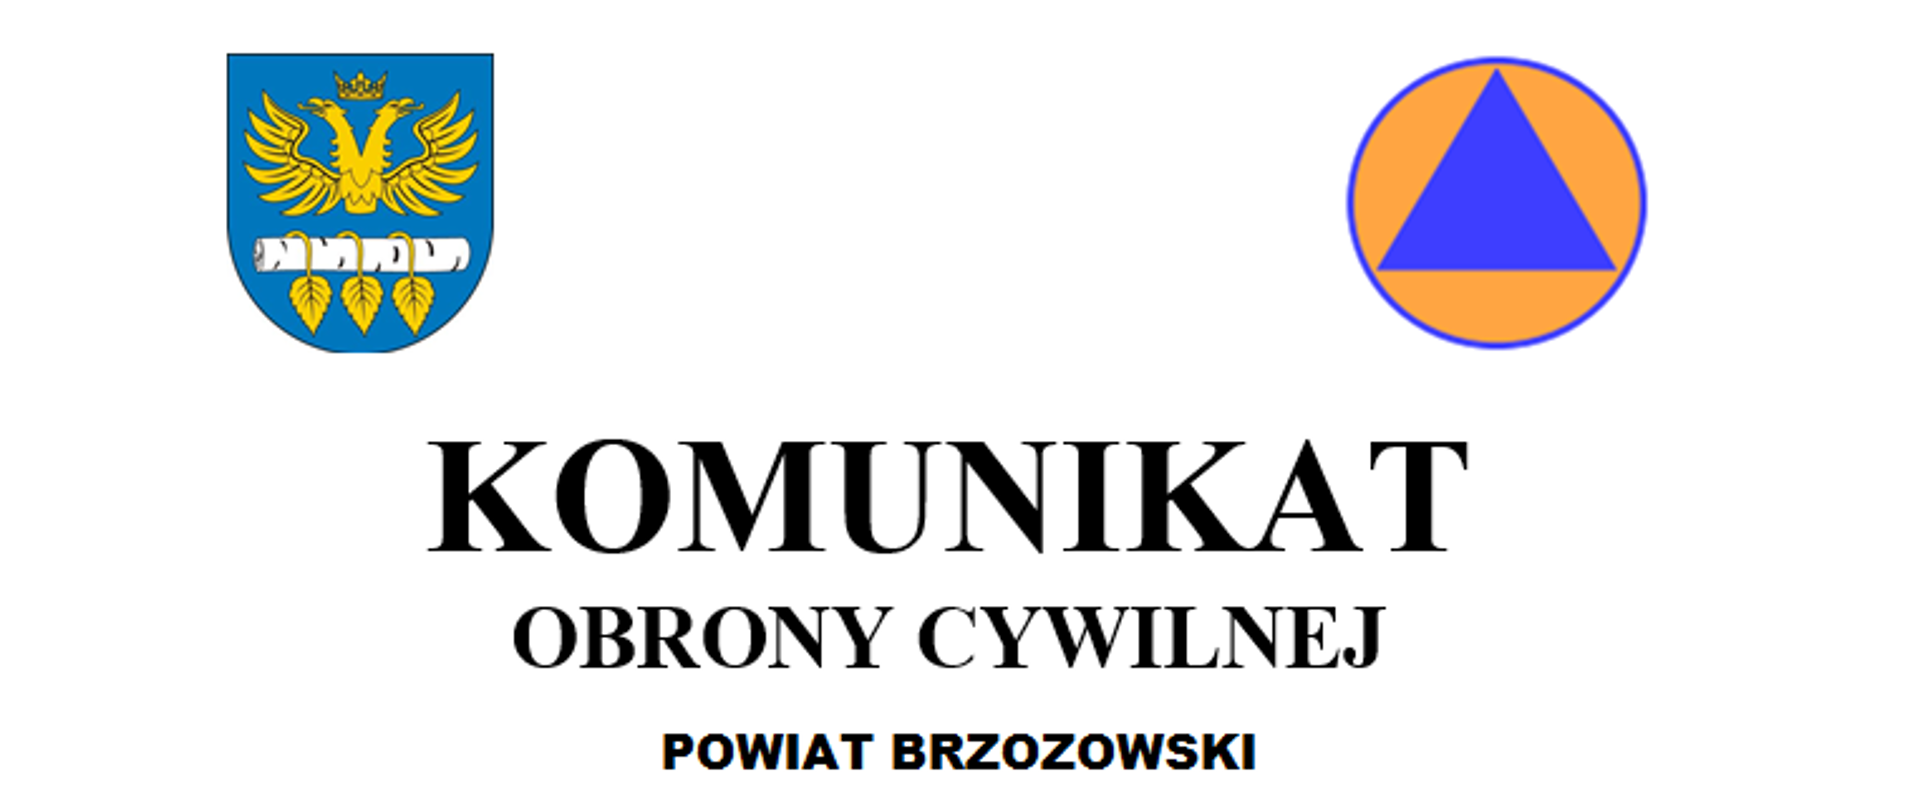 Informacja o głośnej próbie syren. U góry po lewej kolorowe logo powiatu brzozowskiego, po prawej logo Obrony Cywilnej. Poniżej napis o następującej treści :KOMUNIKAT OBRONY CYWILNEJ POWIAT BRZOZOWSKI.